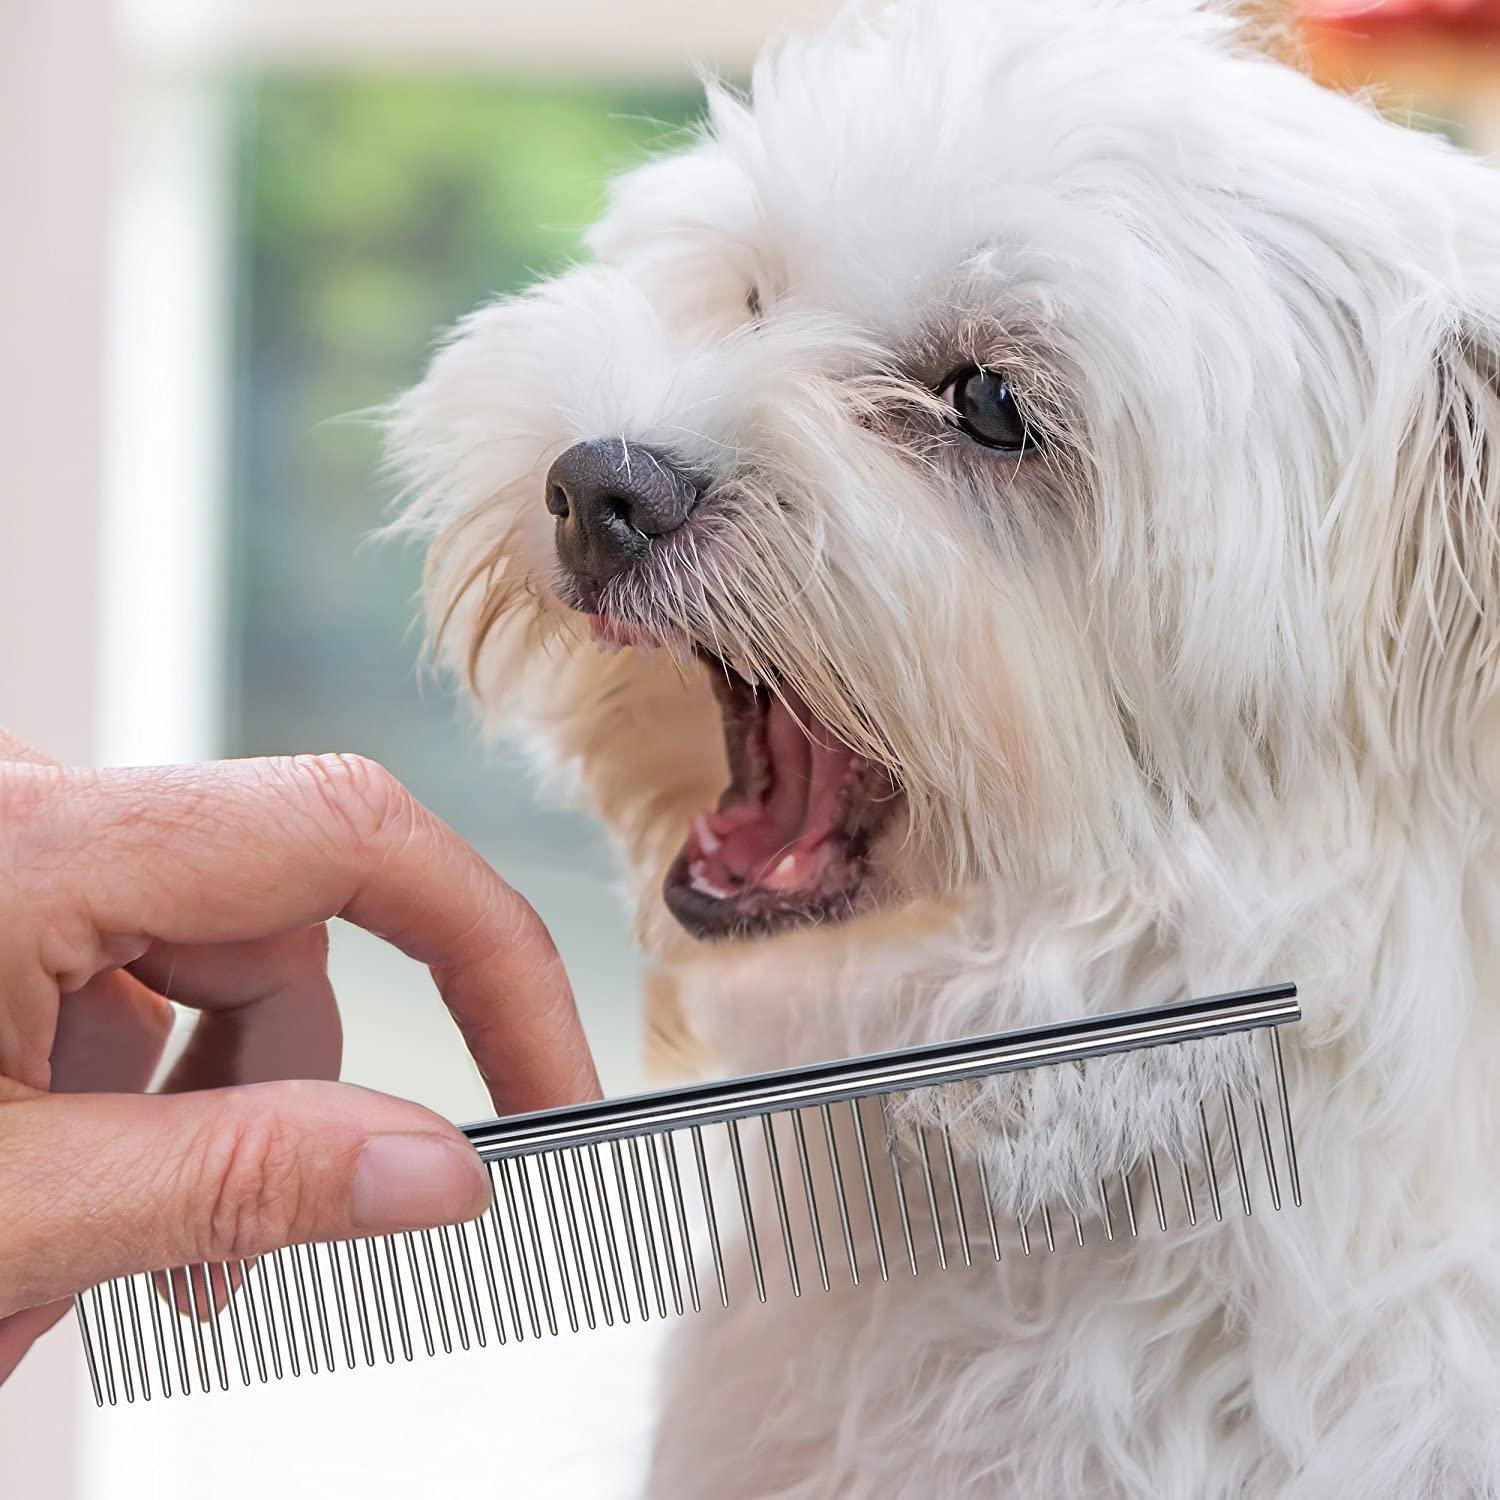  VinTeam Cepillo para Perros Gatos Peine de Limpieza para Mascotas Kit de Kerramientas de Peine Acero Inoxidable para Perros Gatos Conejos 